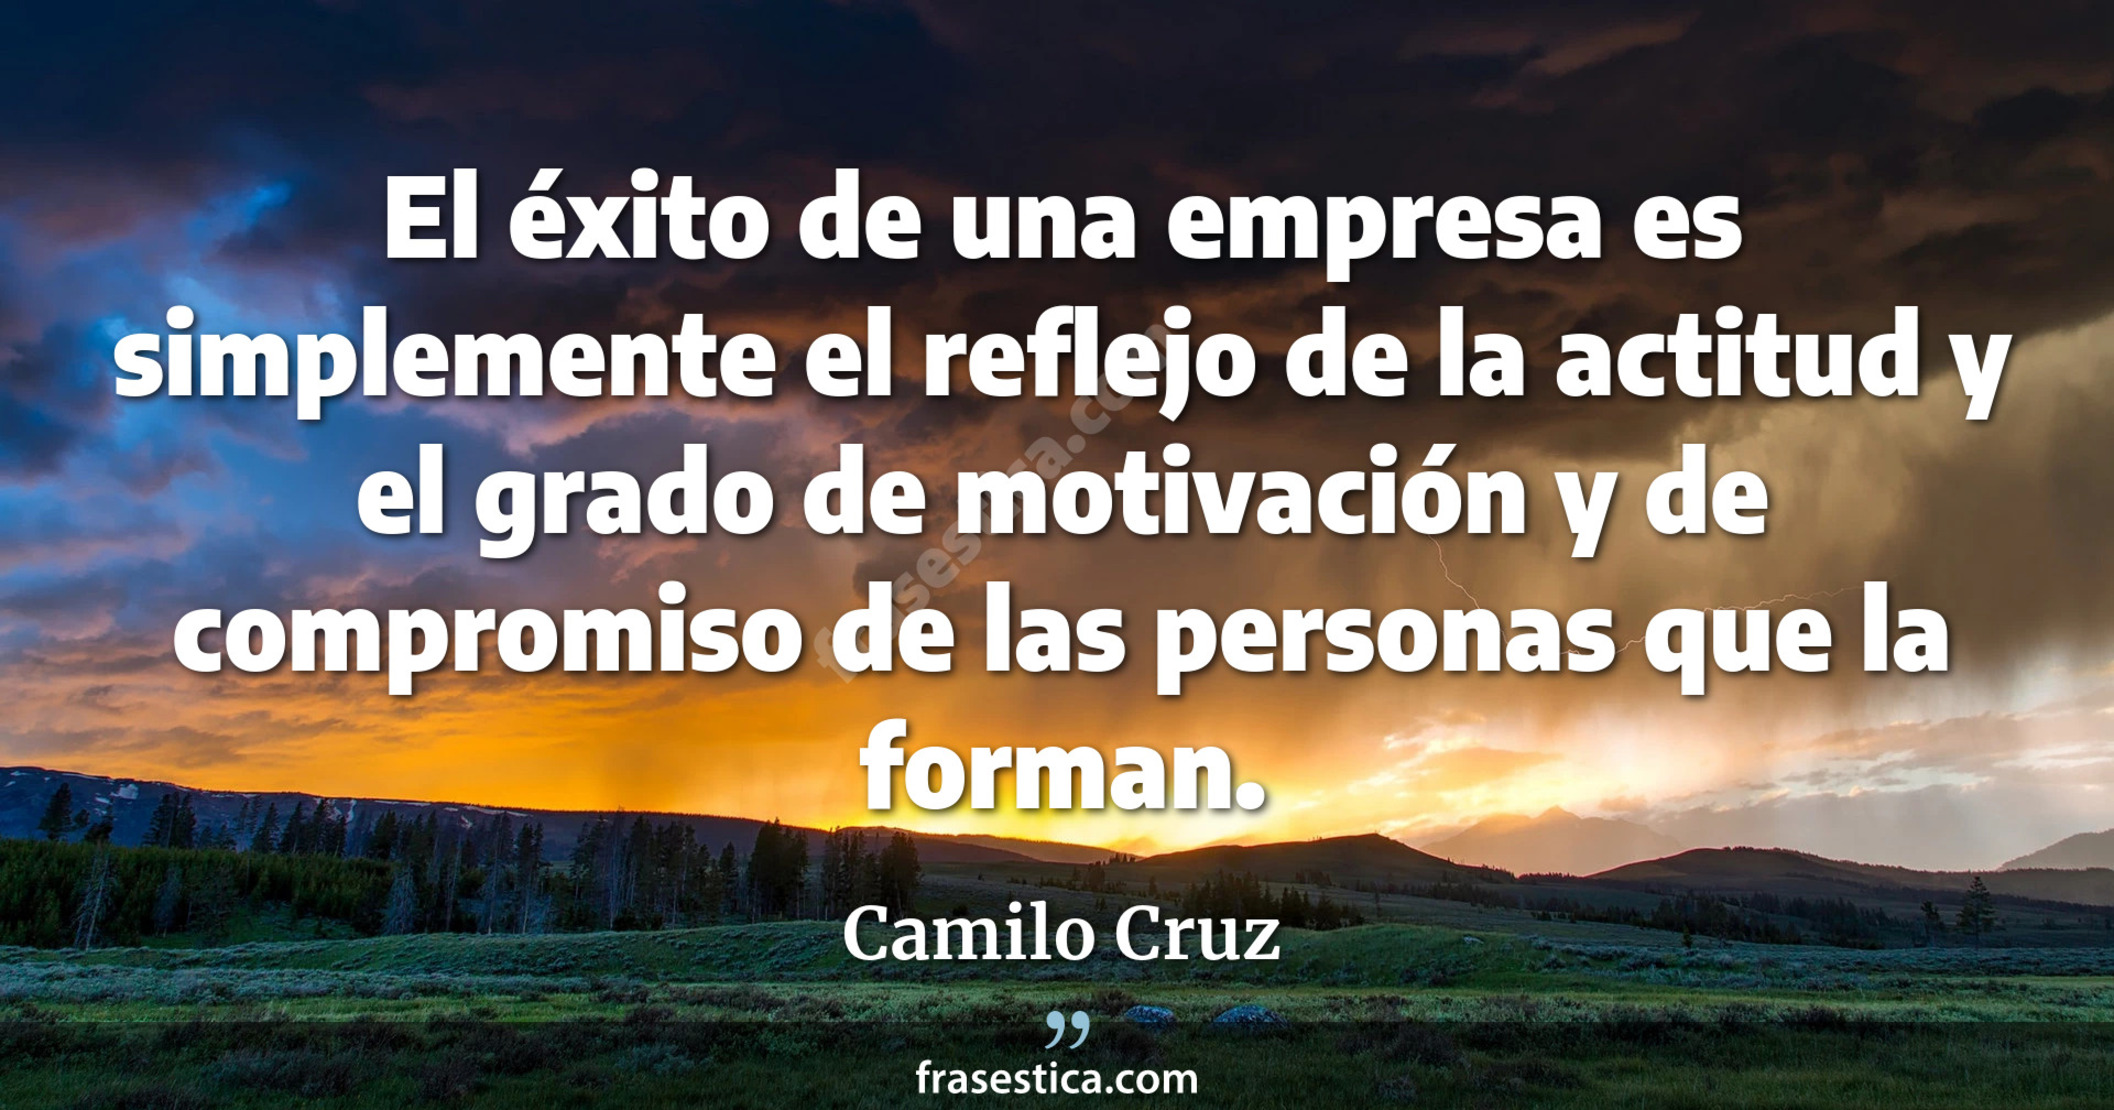 El éxito de una empresa es simplemente el reflejo de la actitud y el grado de motivación y de compromiso de las personas que la forman. - Camilo Cruz